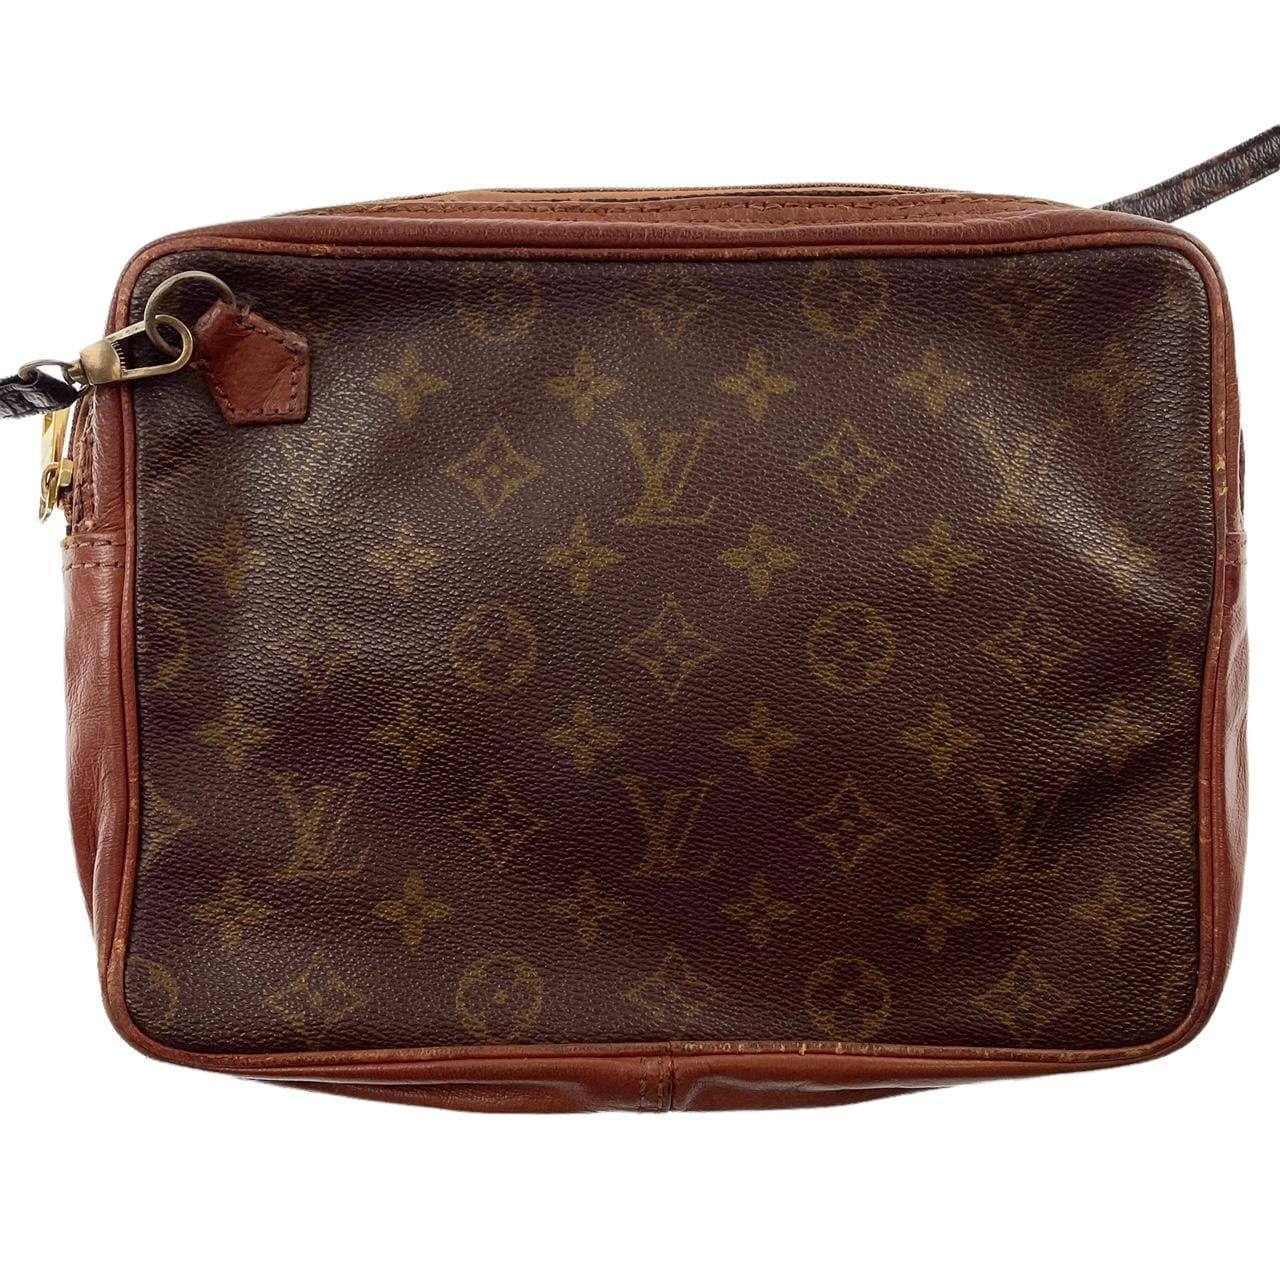 Louis Vuitton Monogram Canvas Top Handle Bag on SALE